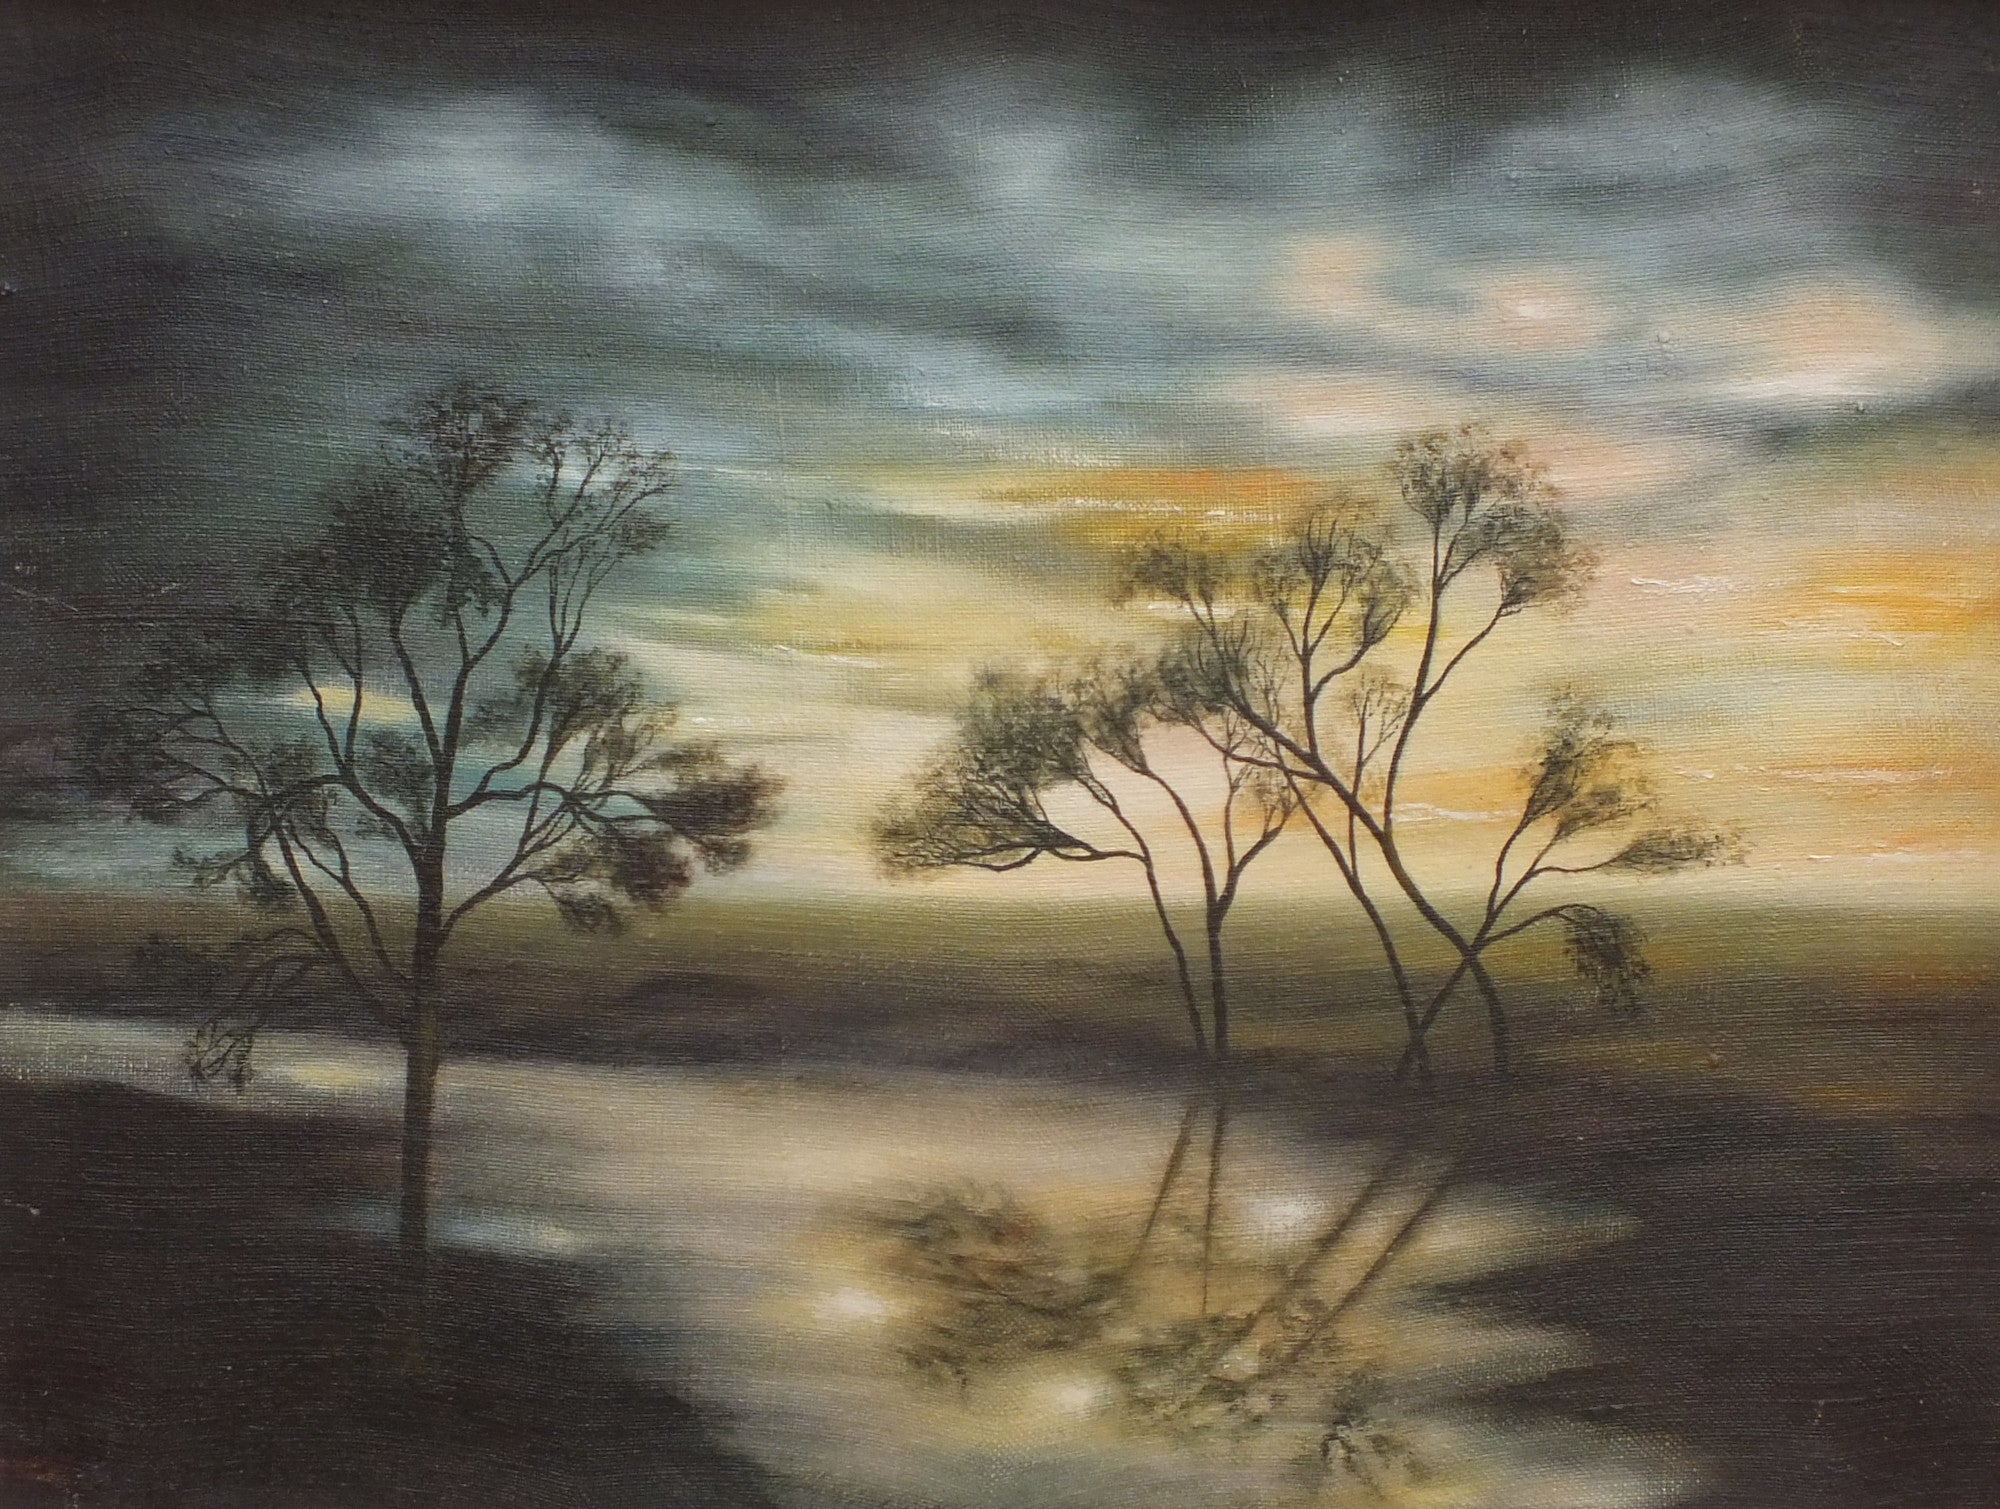 Sunset River Landscape, Framed Original Oil Painting